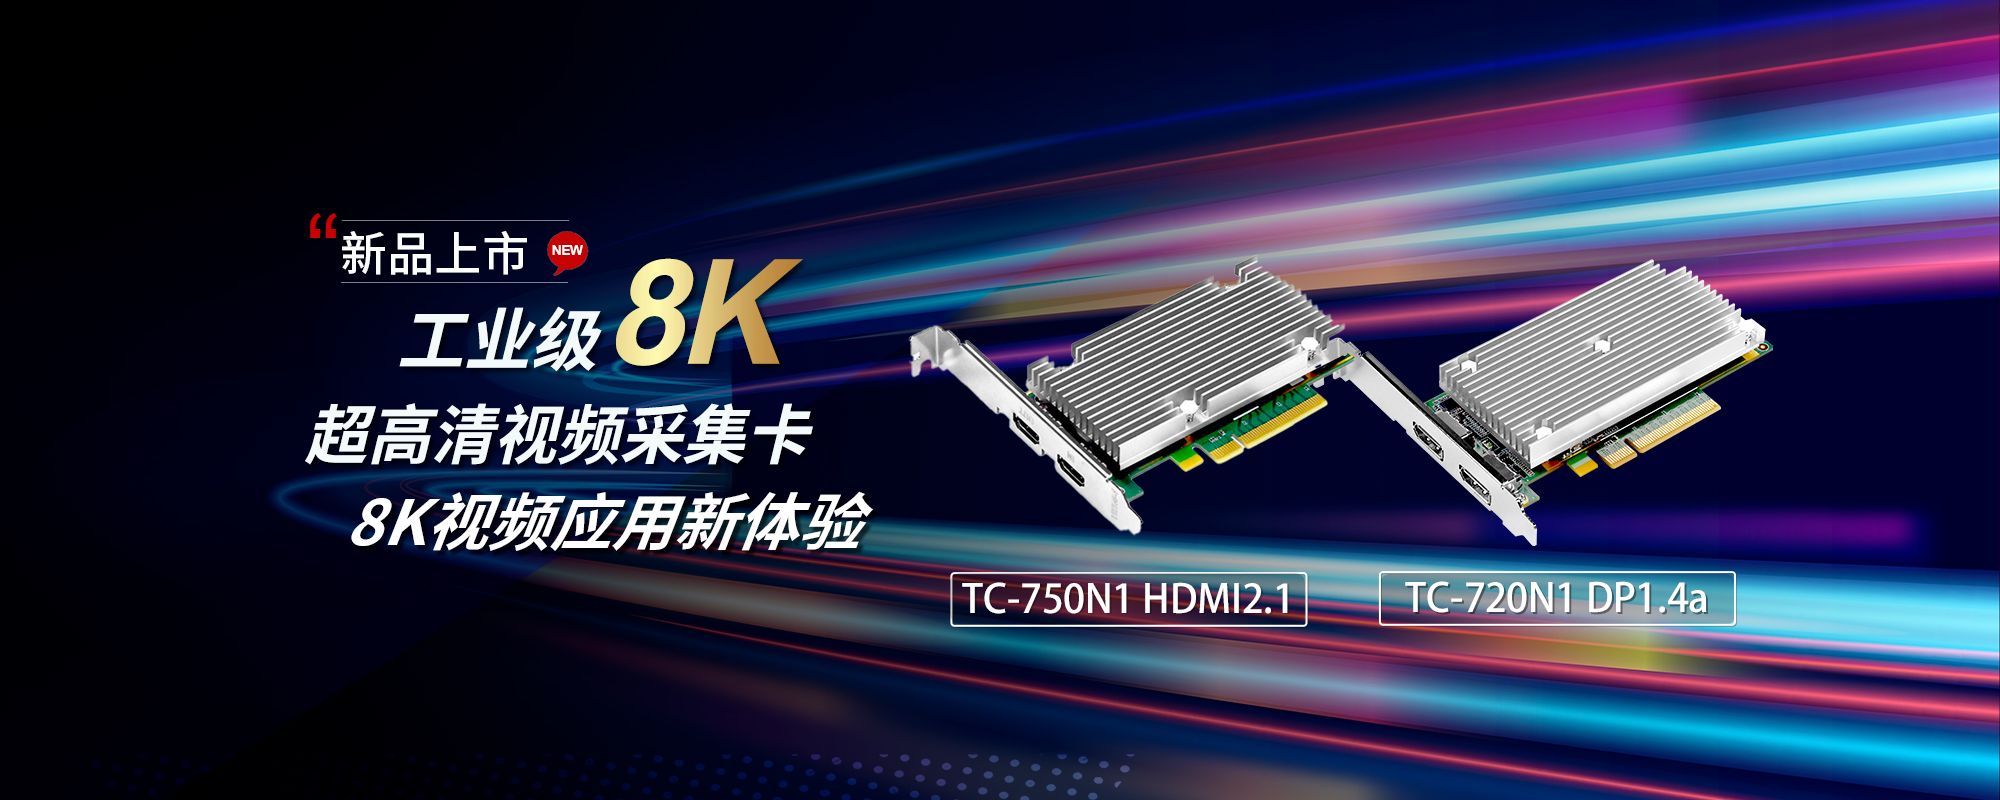 大阳城娱乐工业级8K超高清采集卡TC-750N1 HDMI2.1、TC-720N1 DP1.4a 上市！